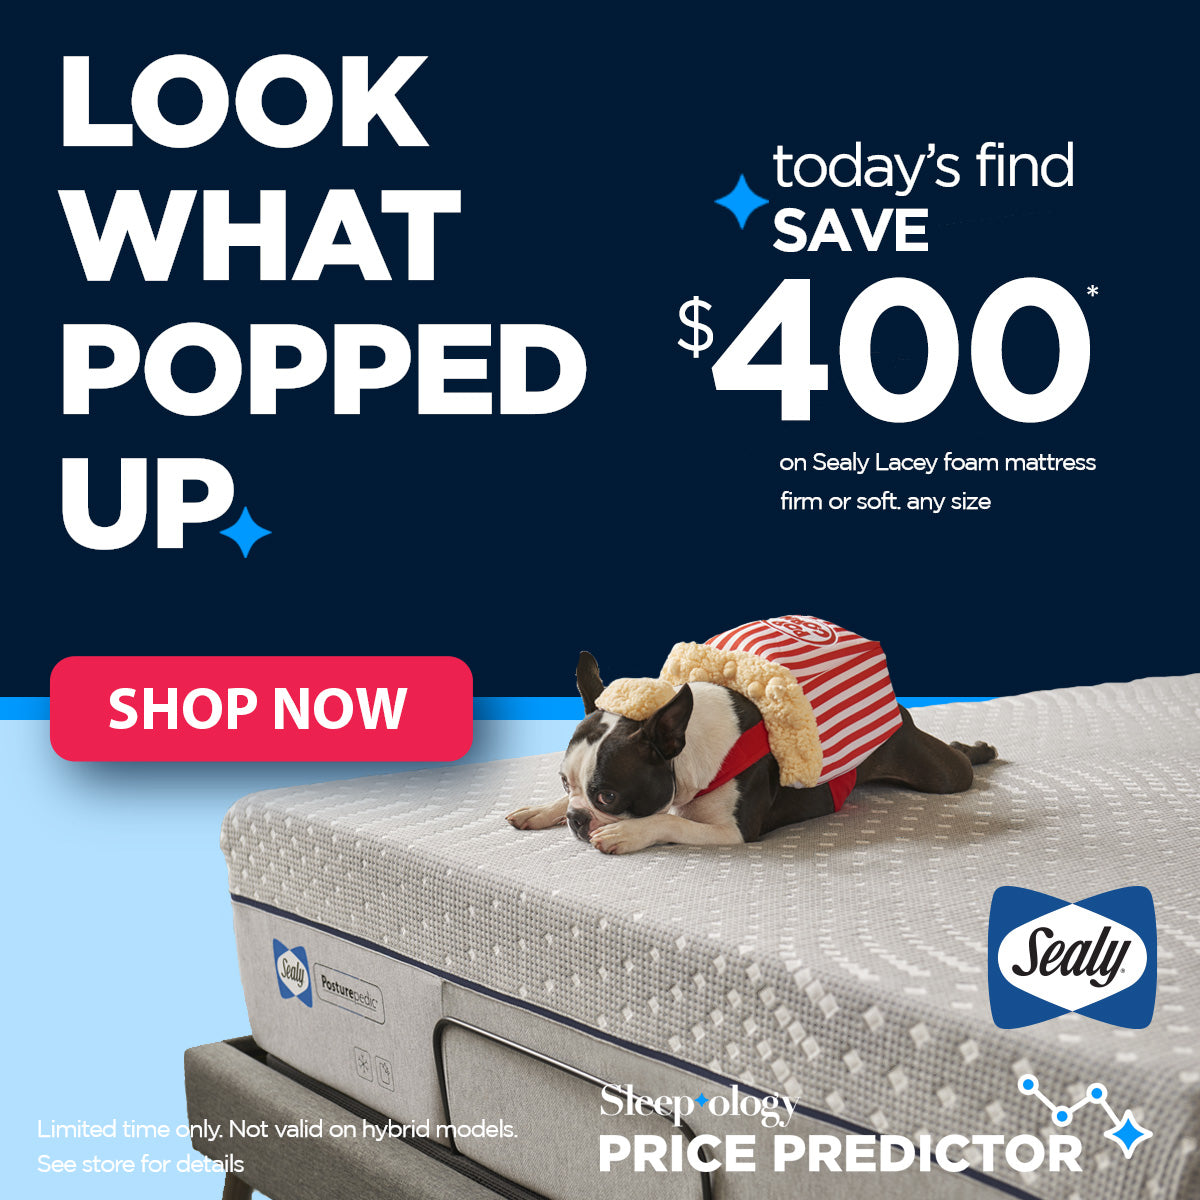 Sleepology Sealy Mattress on Sale - Save $400